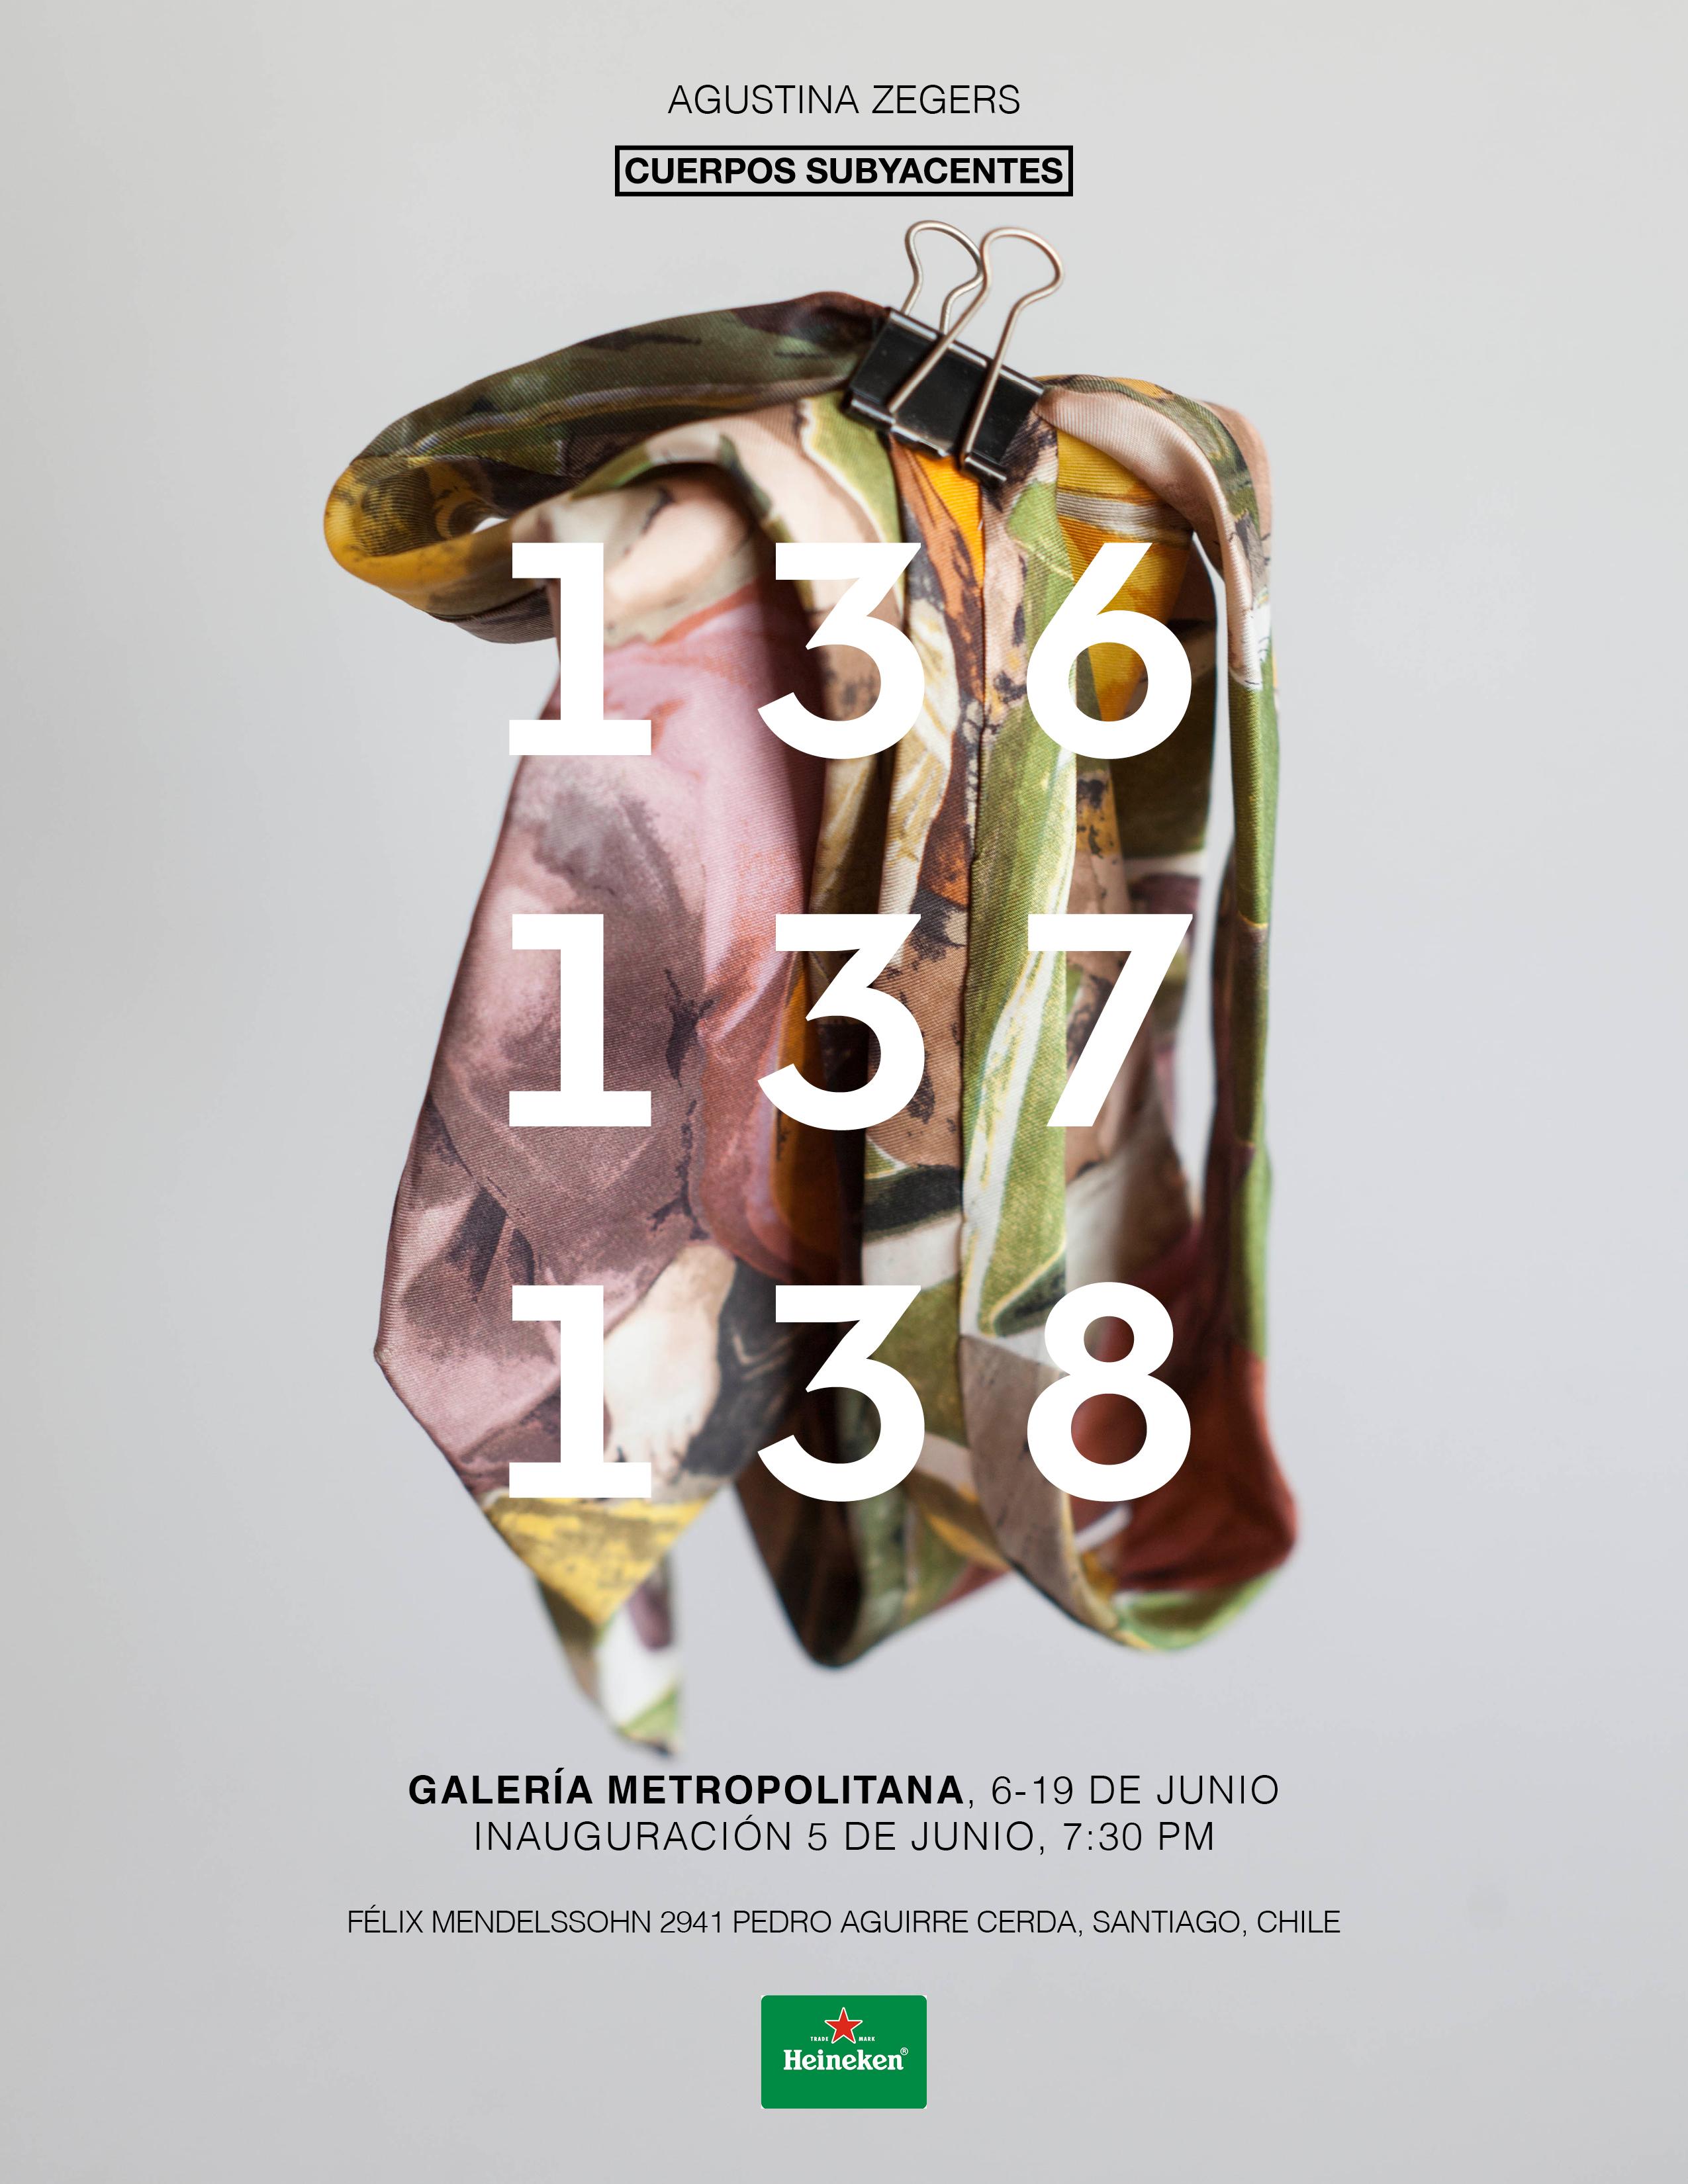 La exposición se inaugura el 5 de junio y se extiende hasta el 19 del mismo mes en Galería Metropolitana.